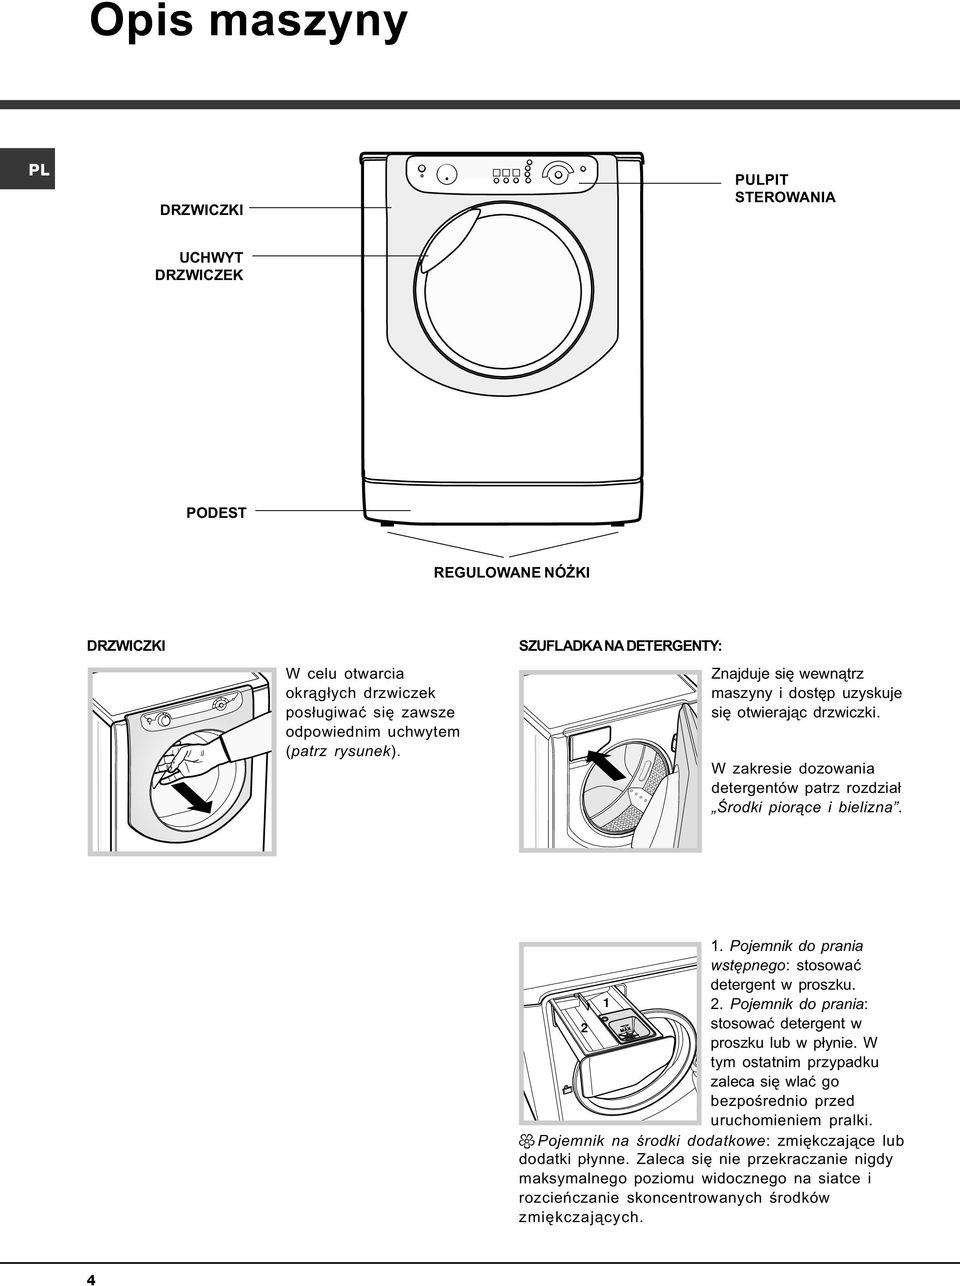 Pojemnik do prania wstêpnego: stosowaæ detergent w proszku. 1 2. Pojemnik do prania: 2 stosowaæ detergent w proszku lub w p³ynie.